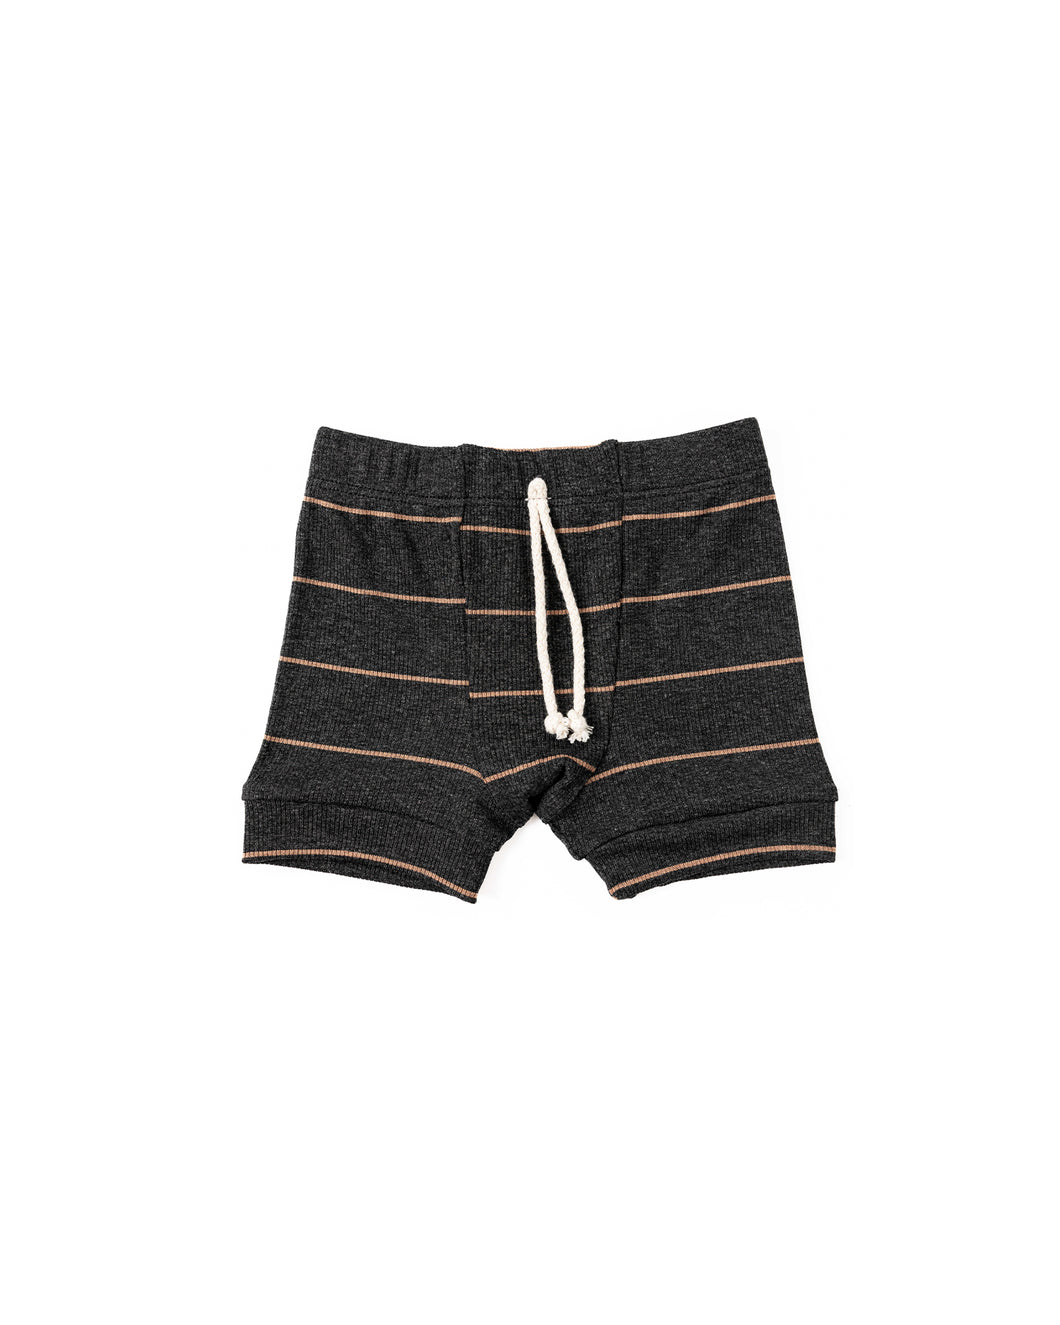 rib knit shorts - anthracite camel stripe